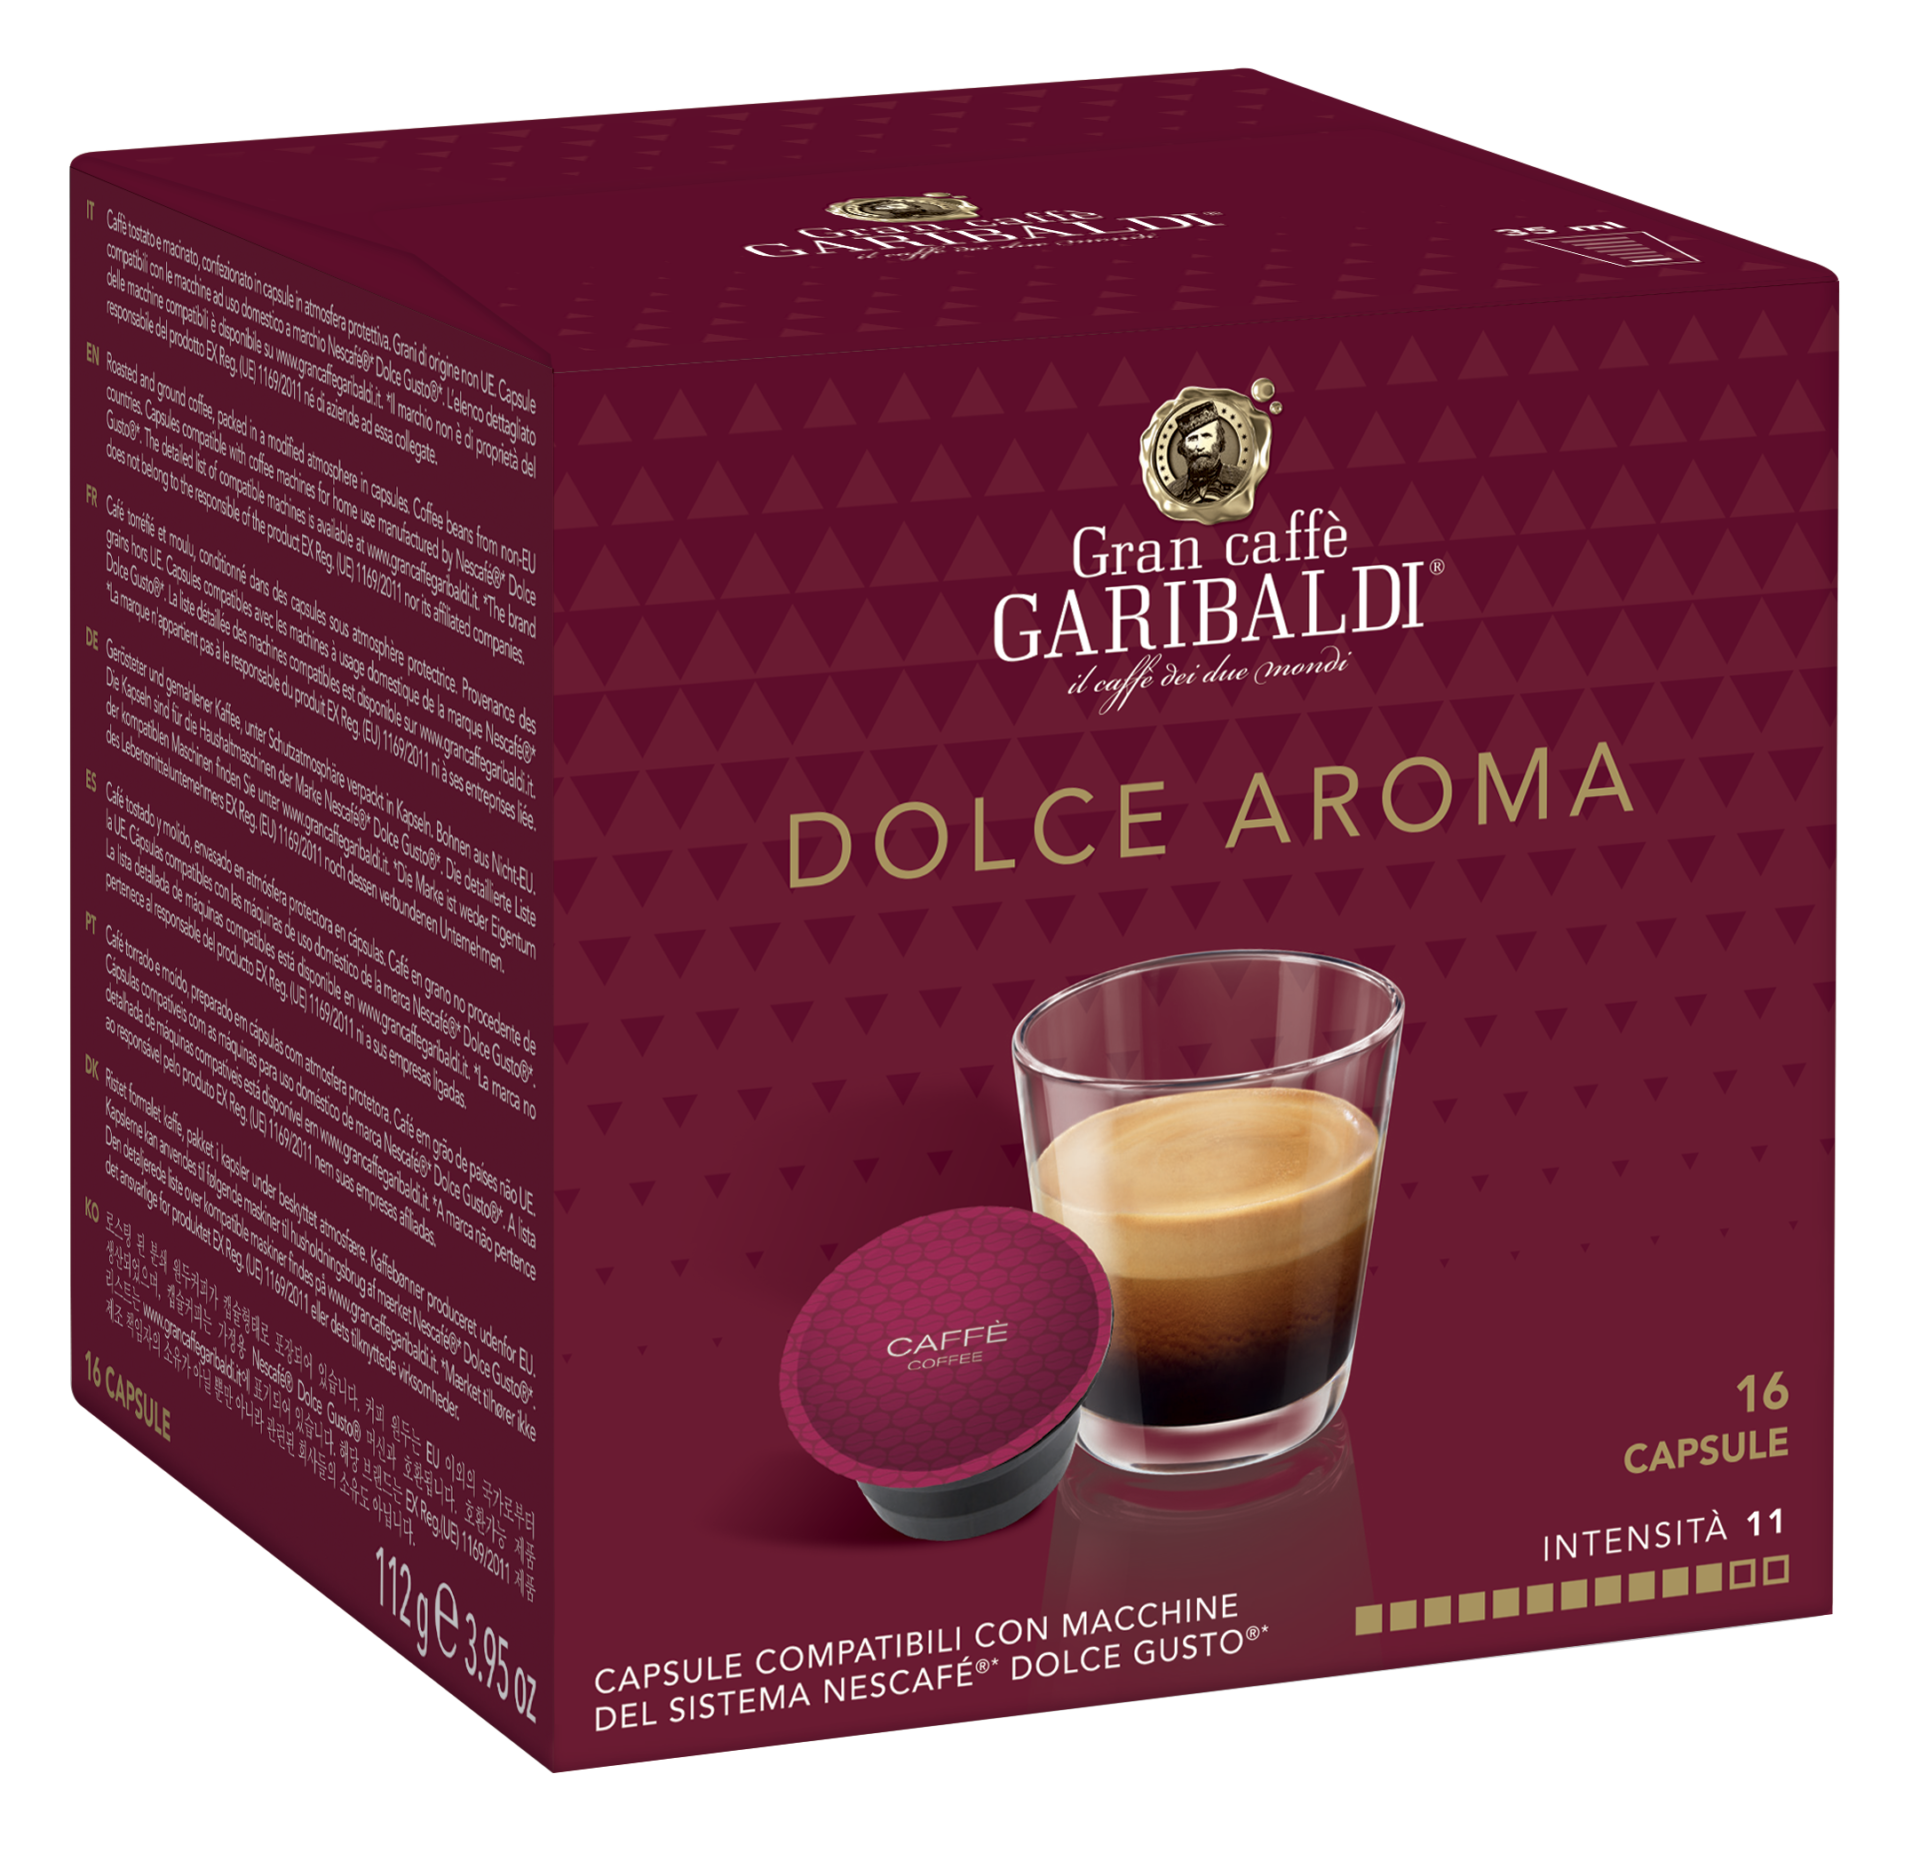 café espresso intenso en cápsulas Lavazza compatible con Nescafé Dolce  Gusto 16 ud.